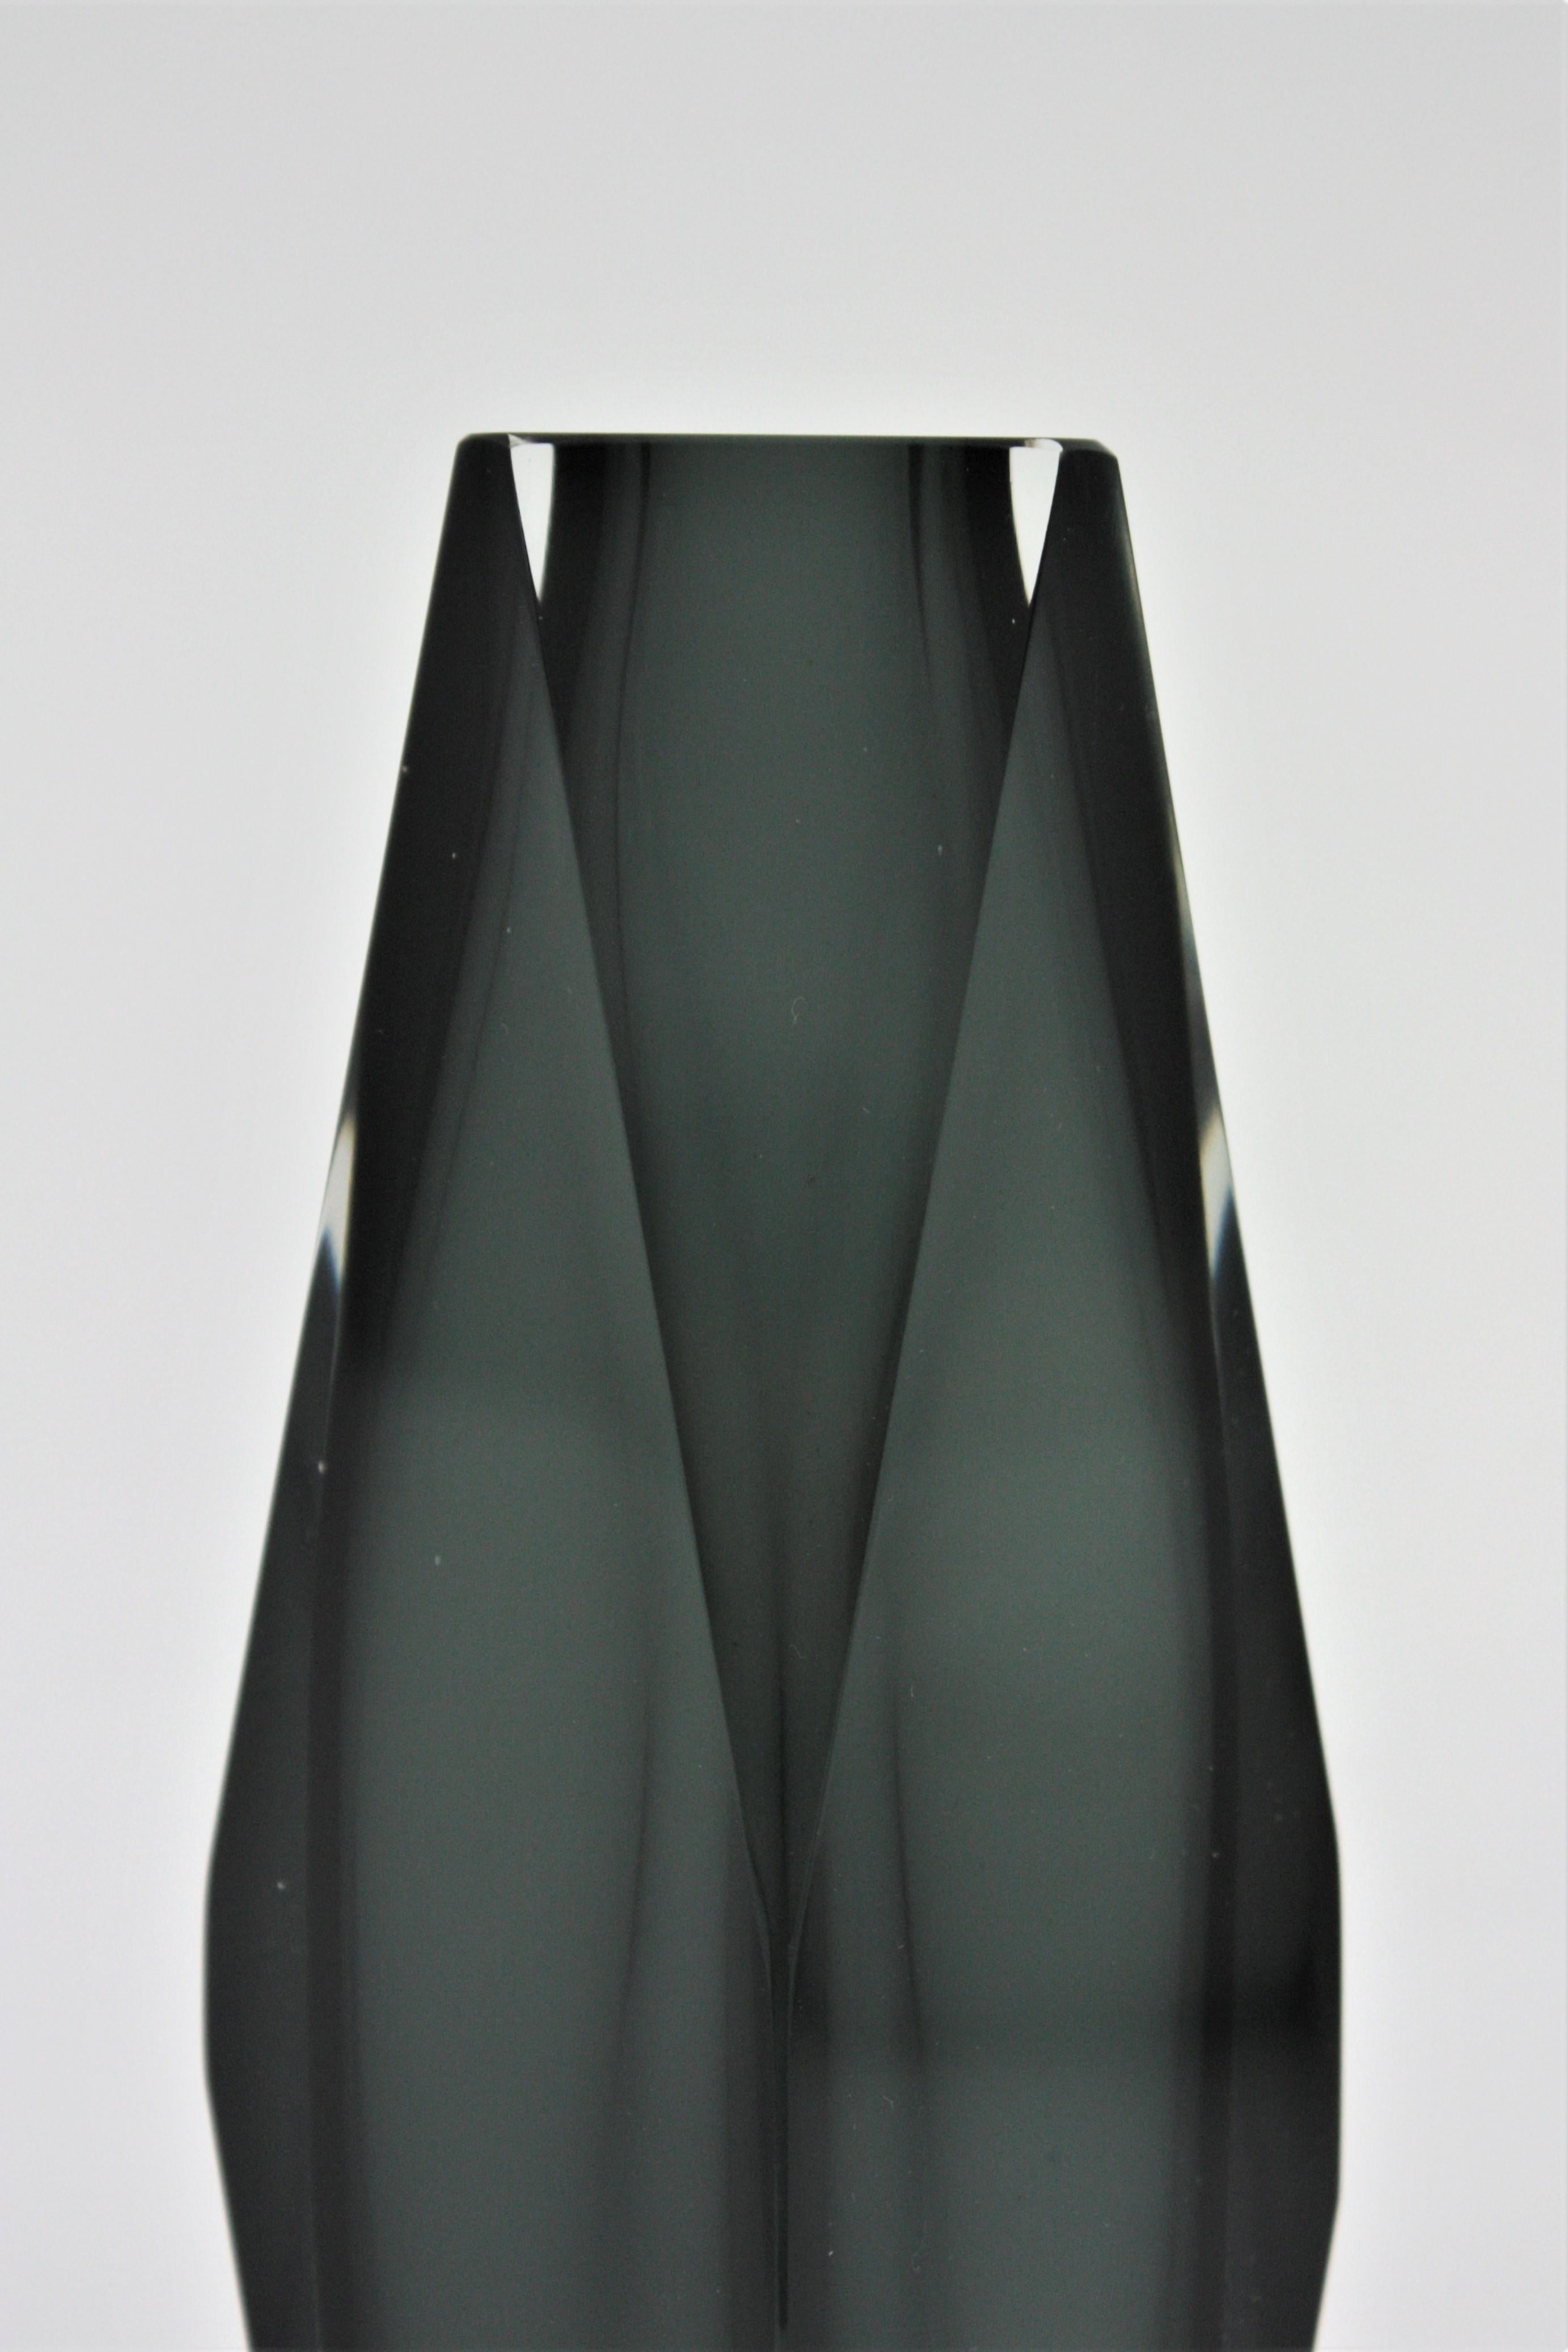 Riesige Mandruzzato Murano Sommerso-Vase aus Rauchgrauem, klarem, facettiertem Kunstglas (Handgefertigt) im Angebot